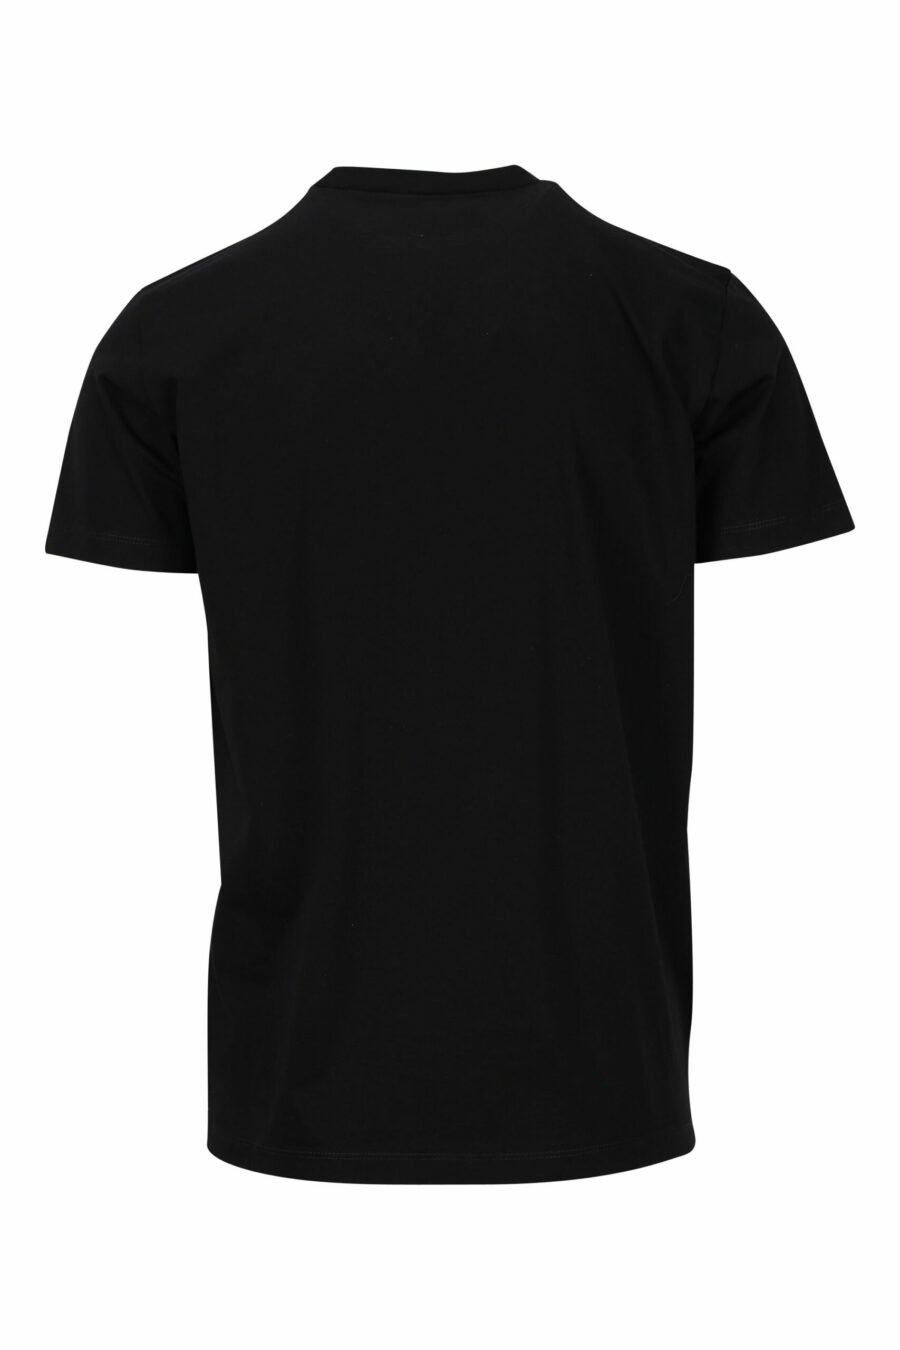 Schwarzes T-Shirt mit blauem "College"-Maxilogo - 8054148086510 1 skaliert